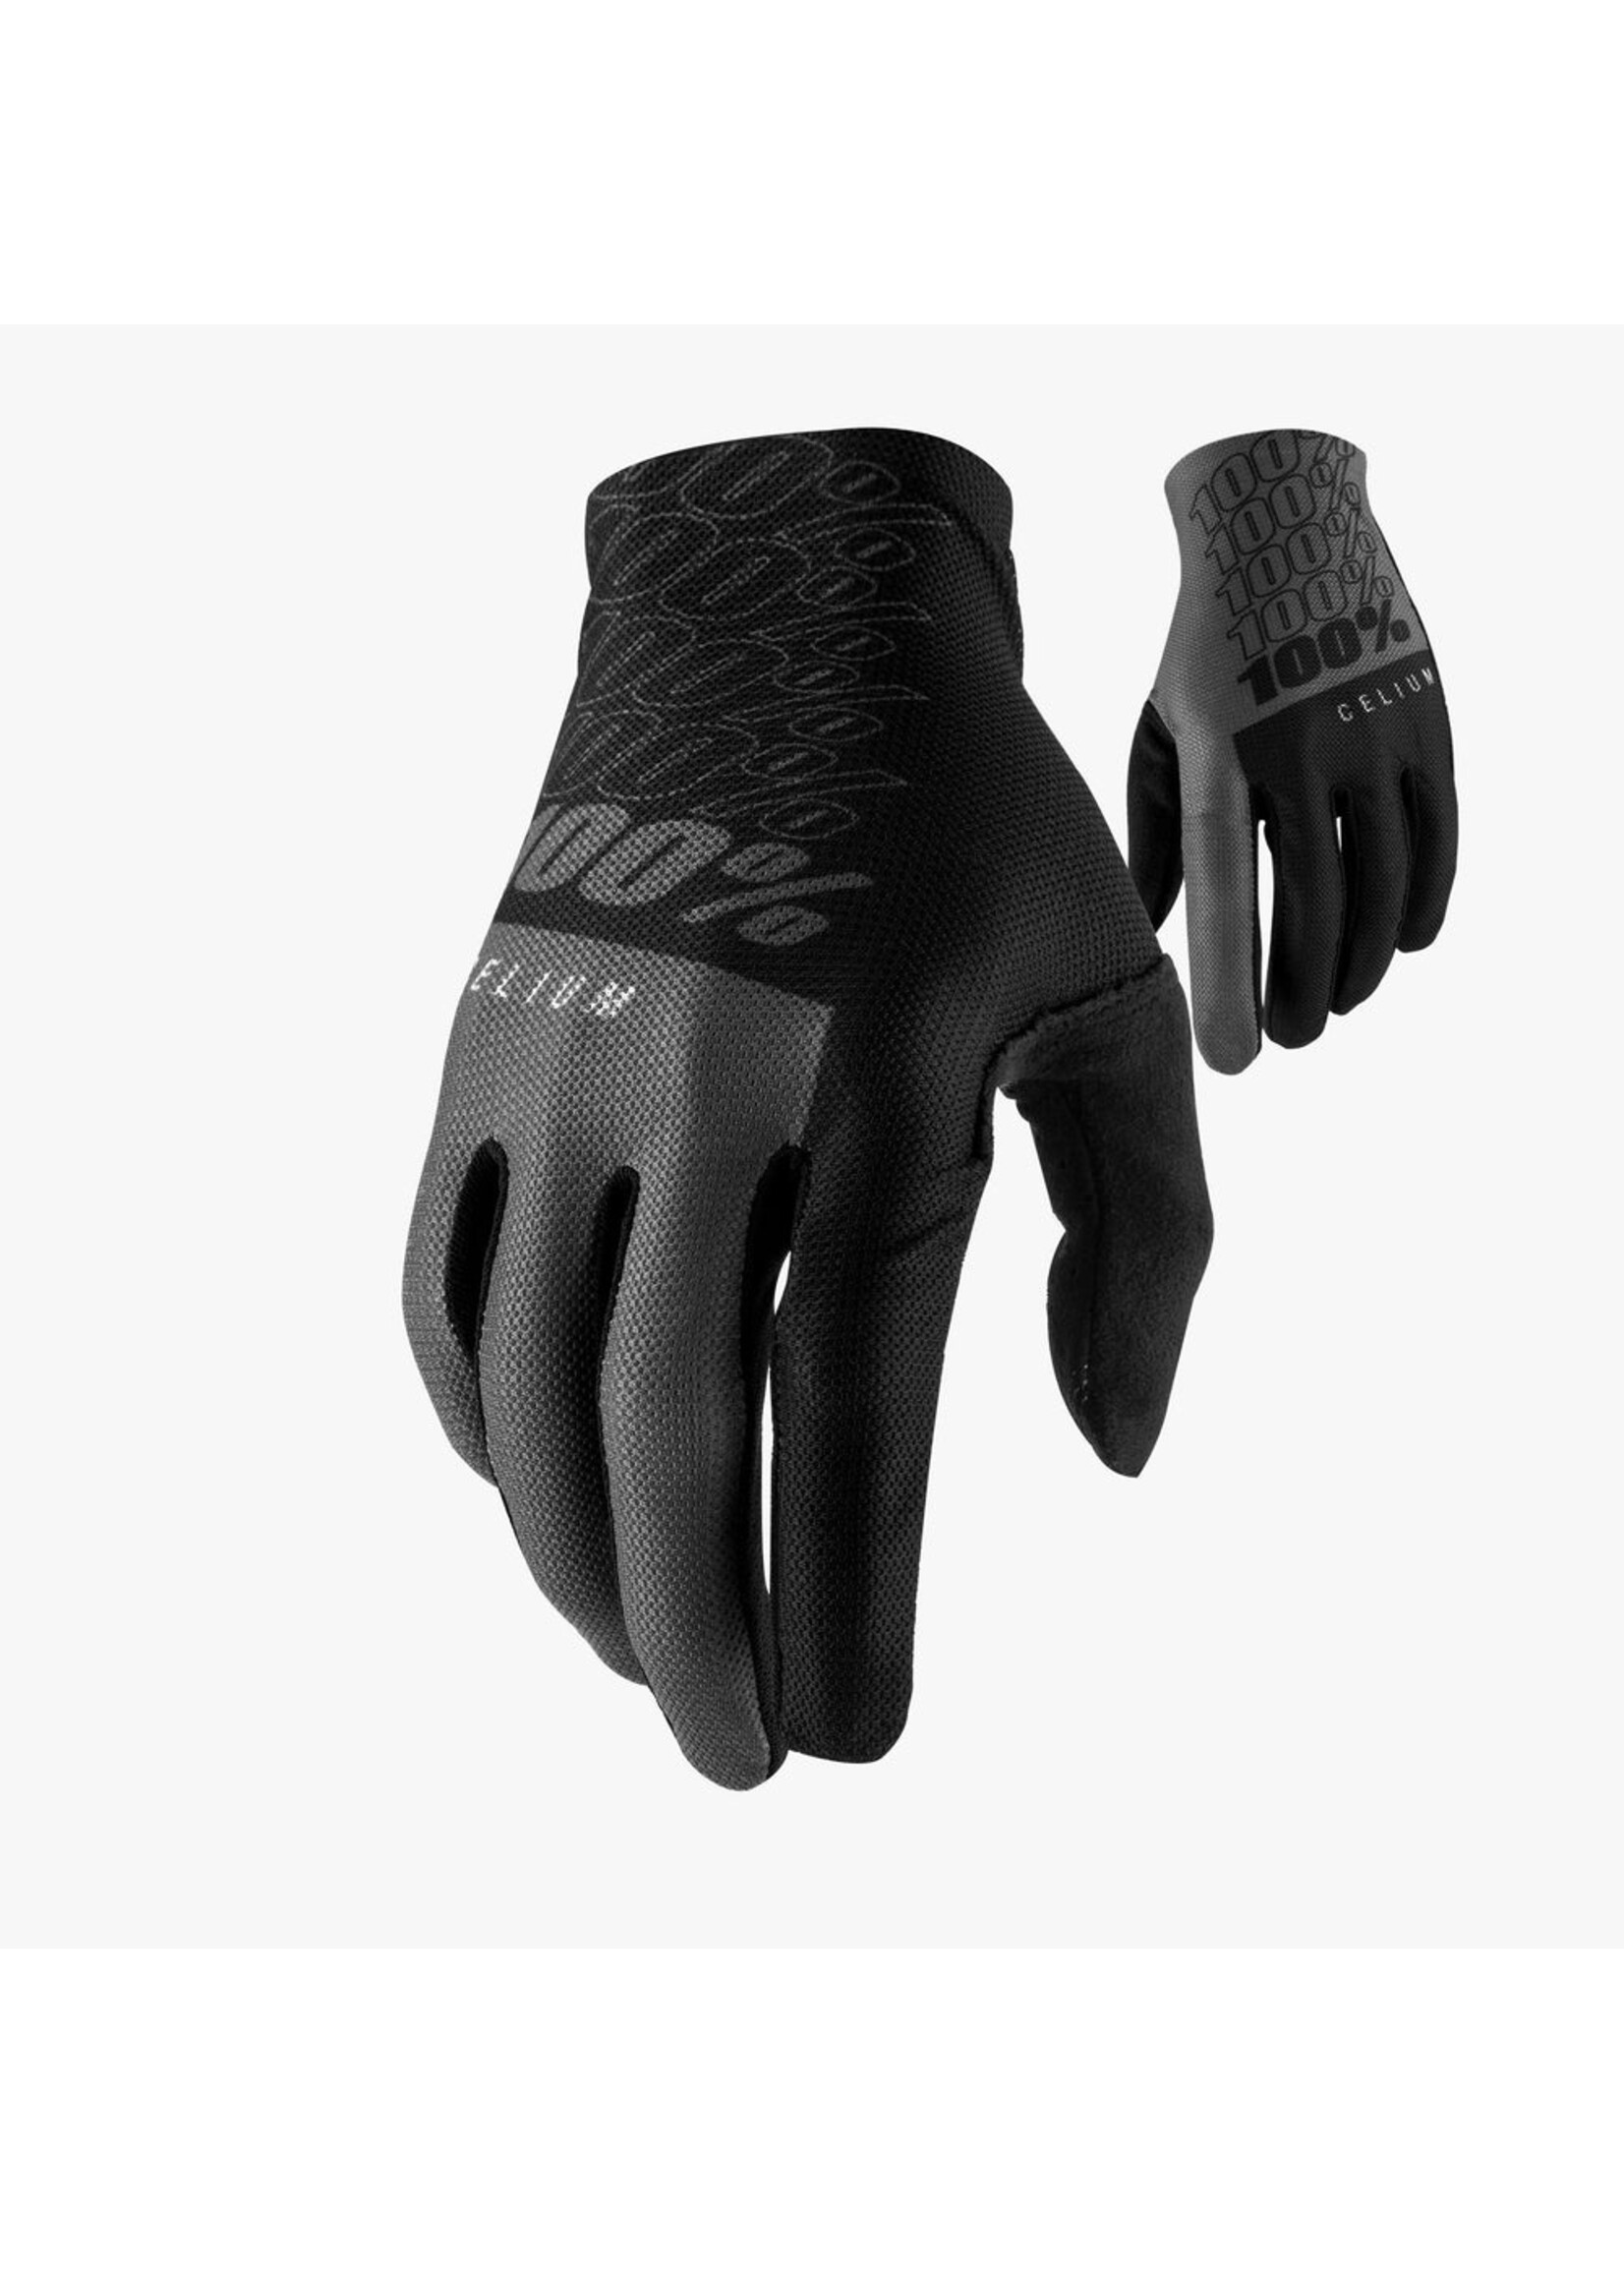 100 Percent 100% Celium Gloves Black/Grey